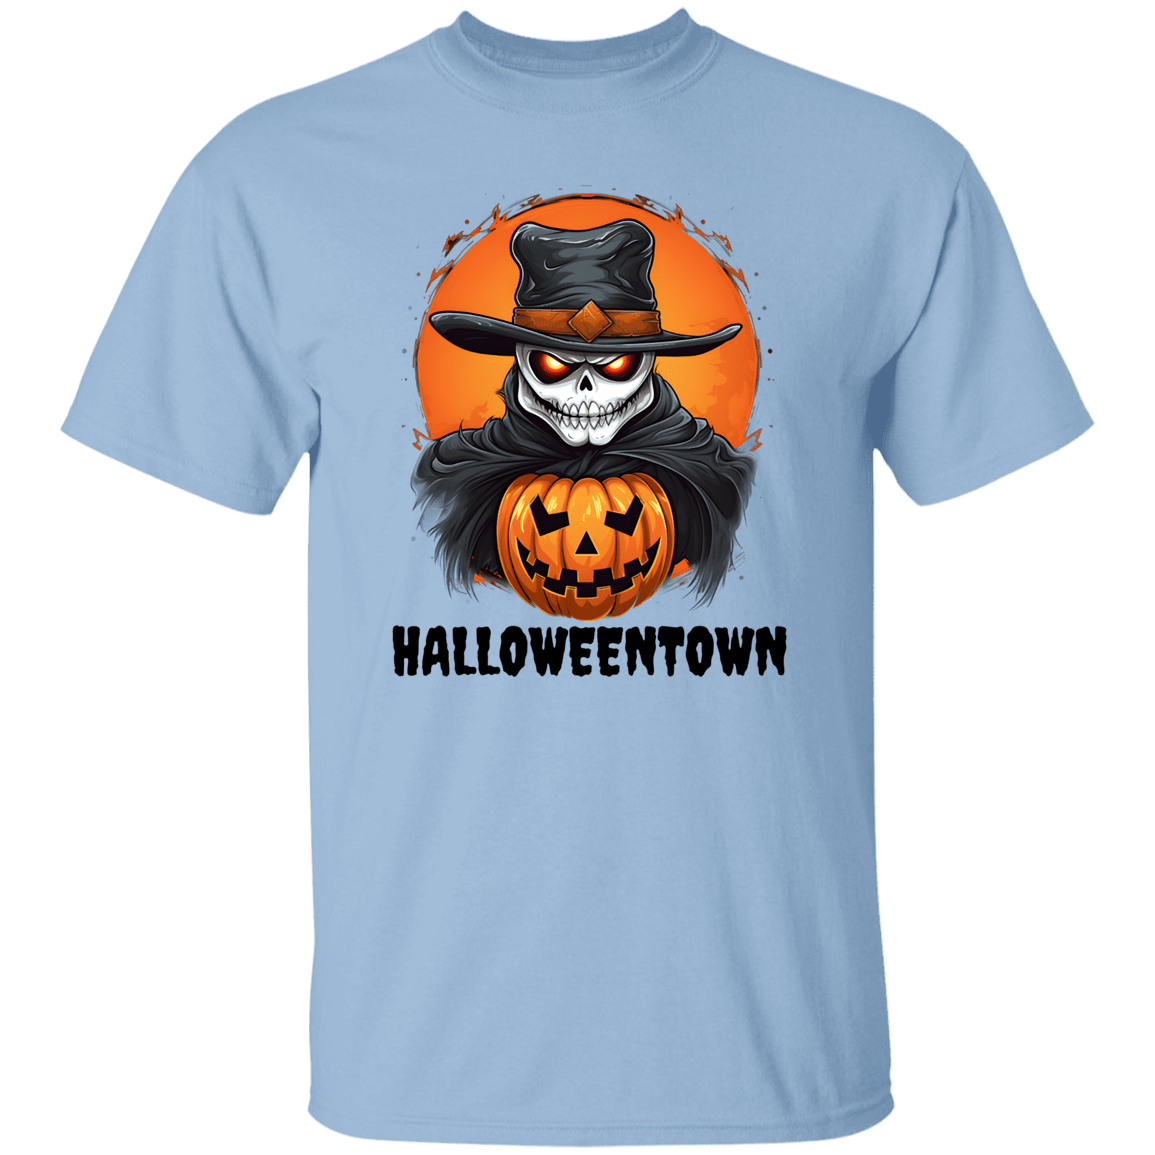 Halloweentown T-Shirt